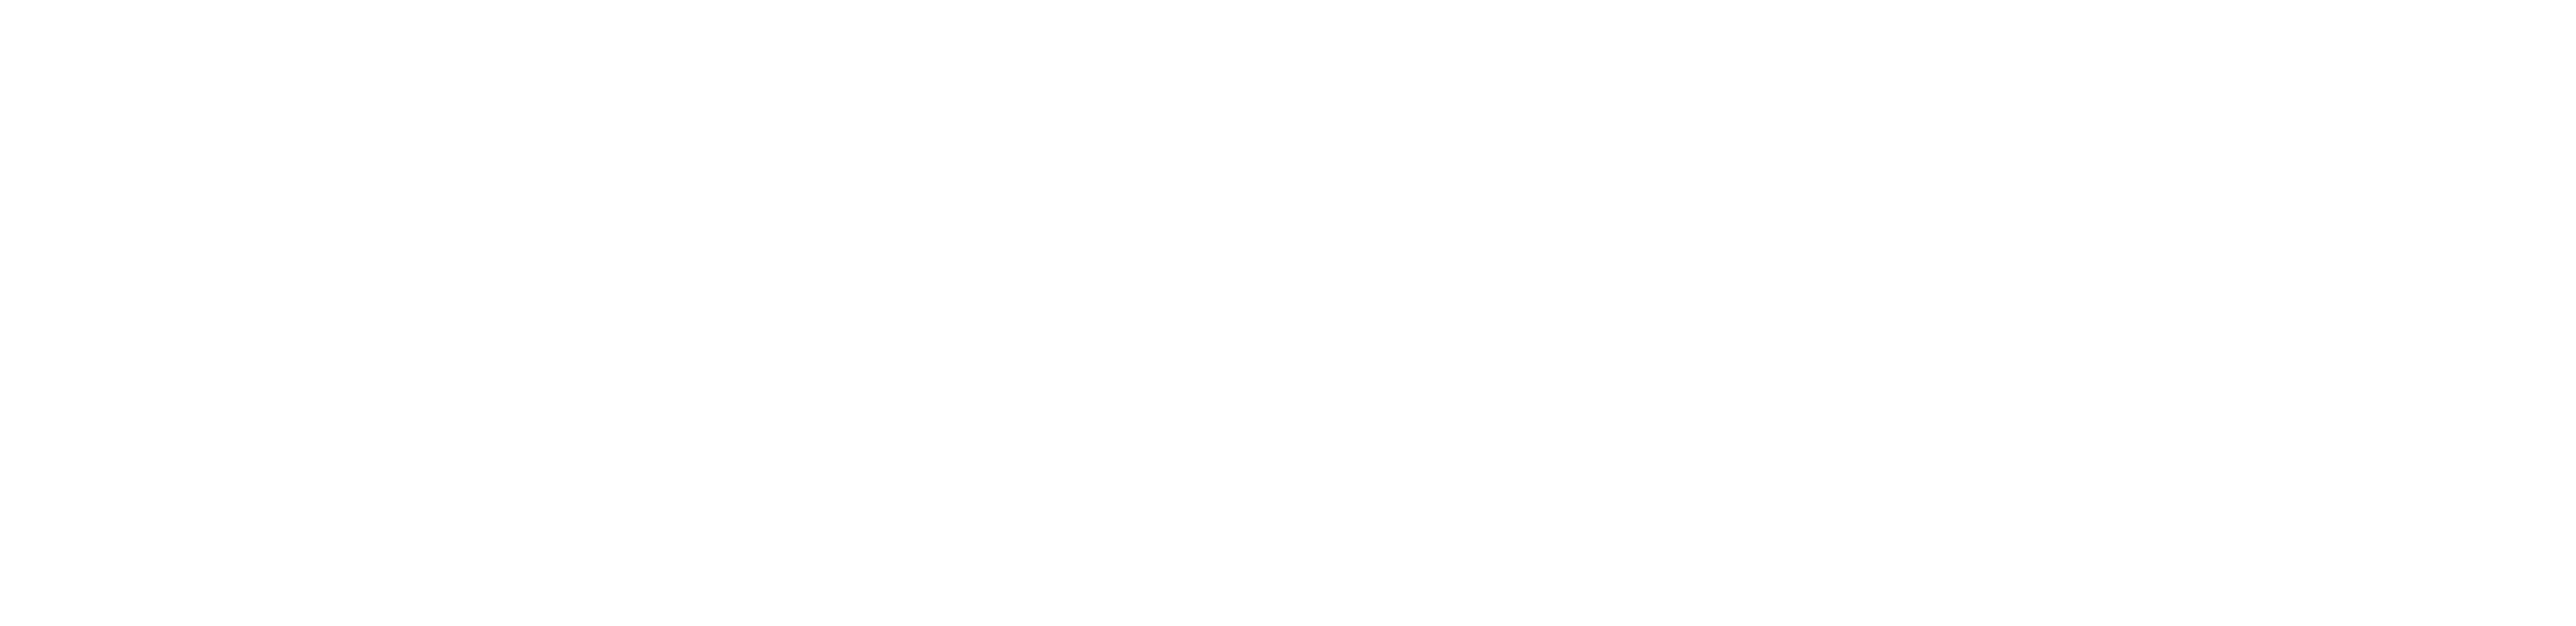 Cerner Logo - Cerner Integrated